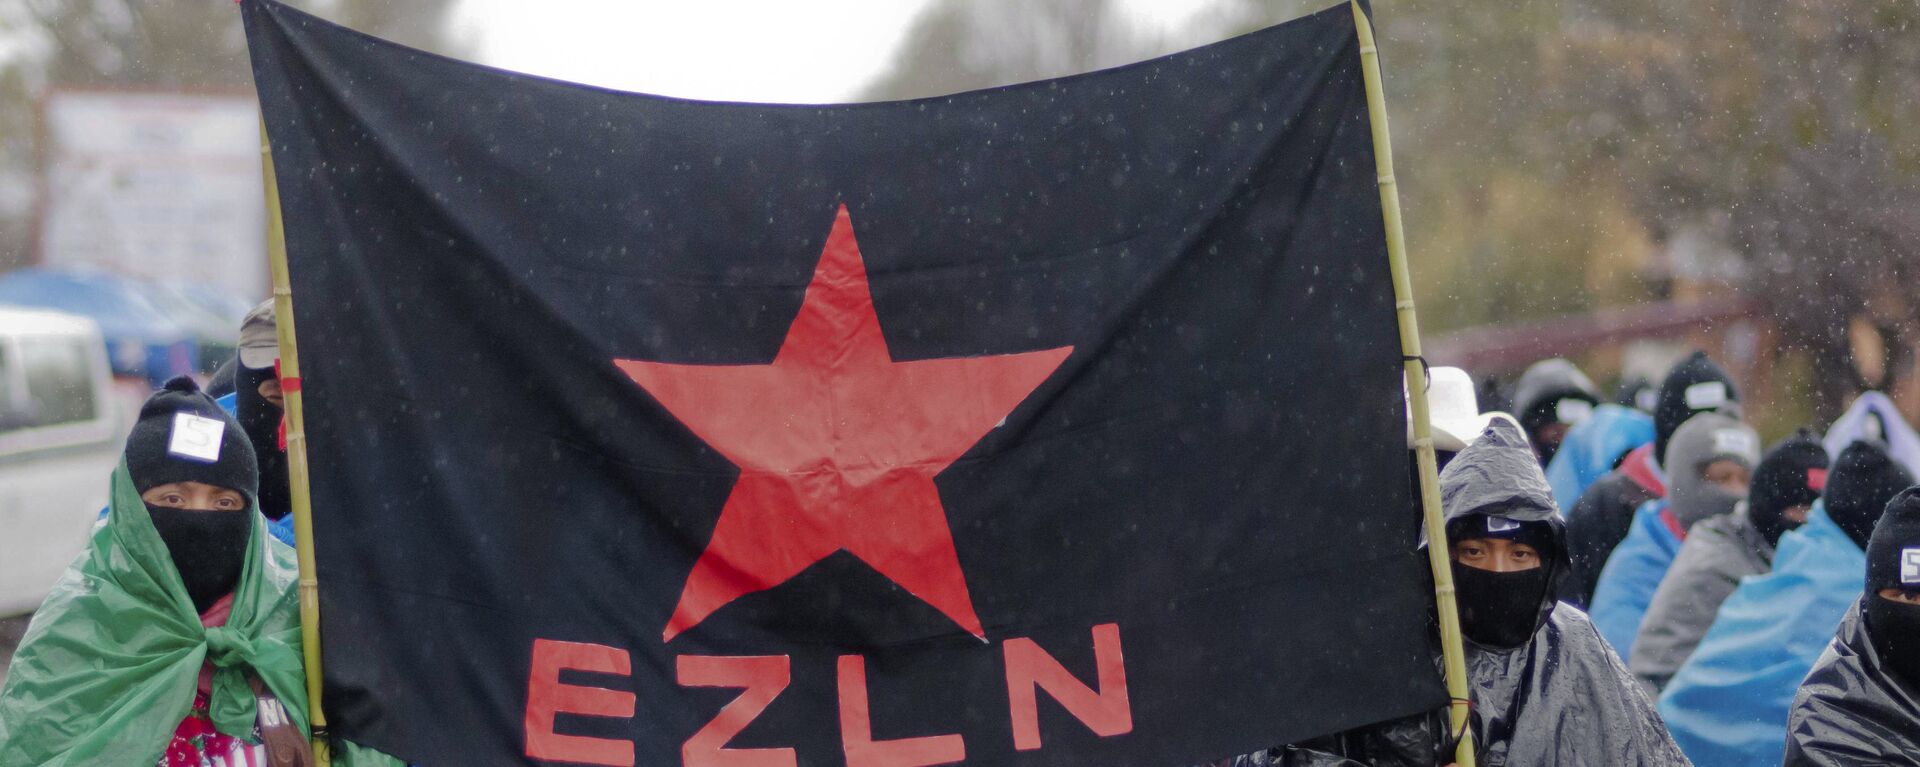 Partidarios de EZLN (archivo) - Sputnik Mundo, 1920, 19.08.2019